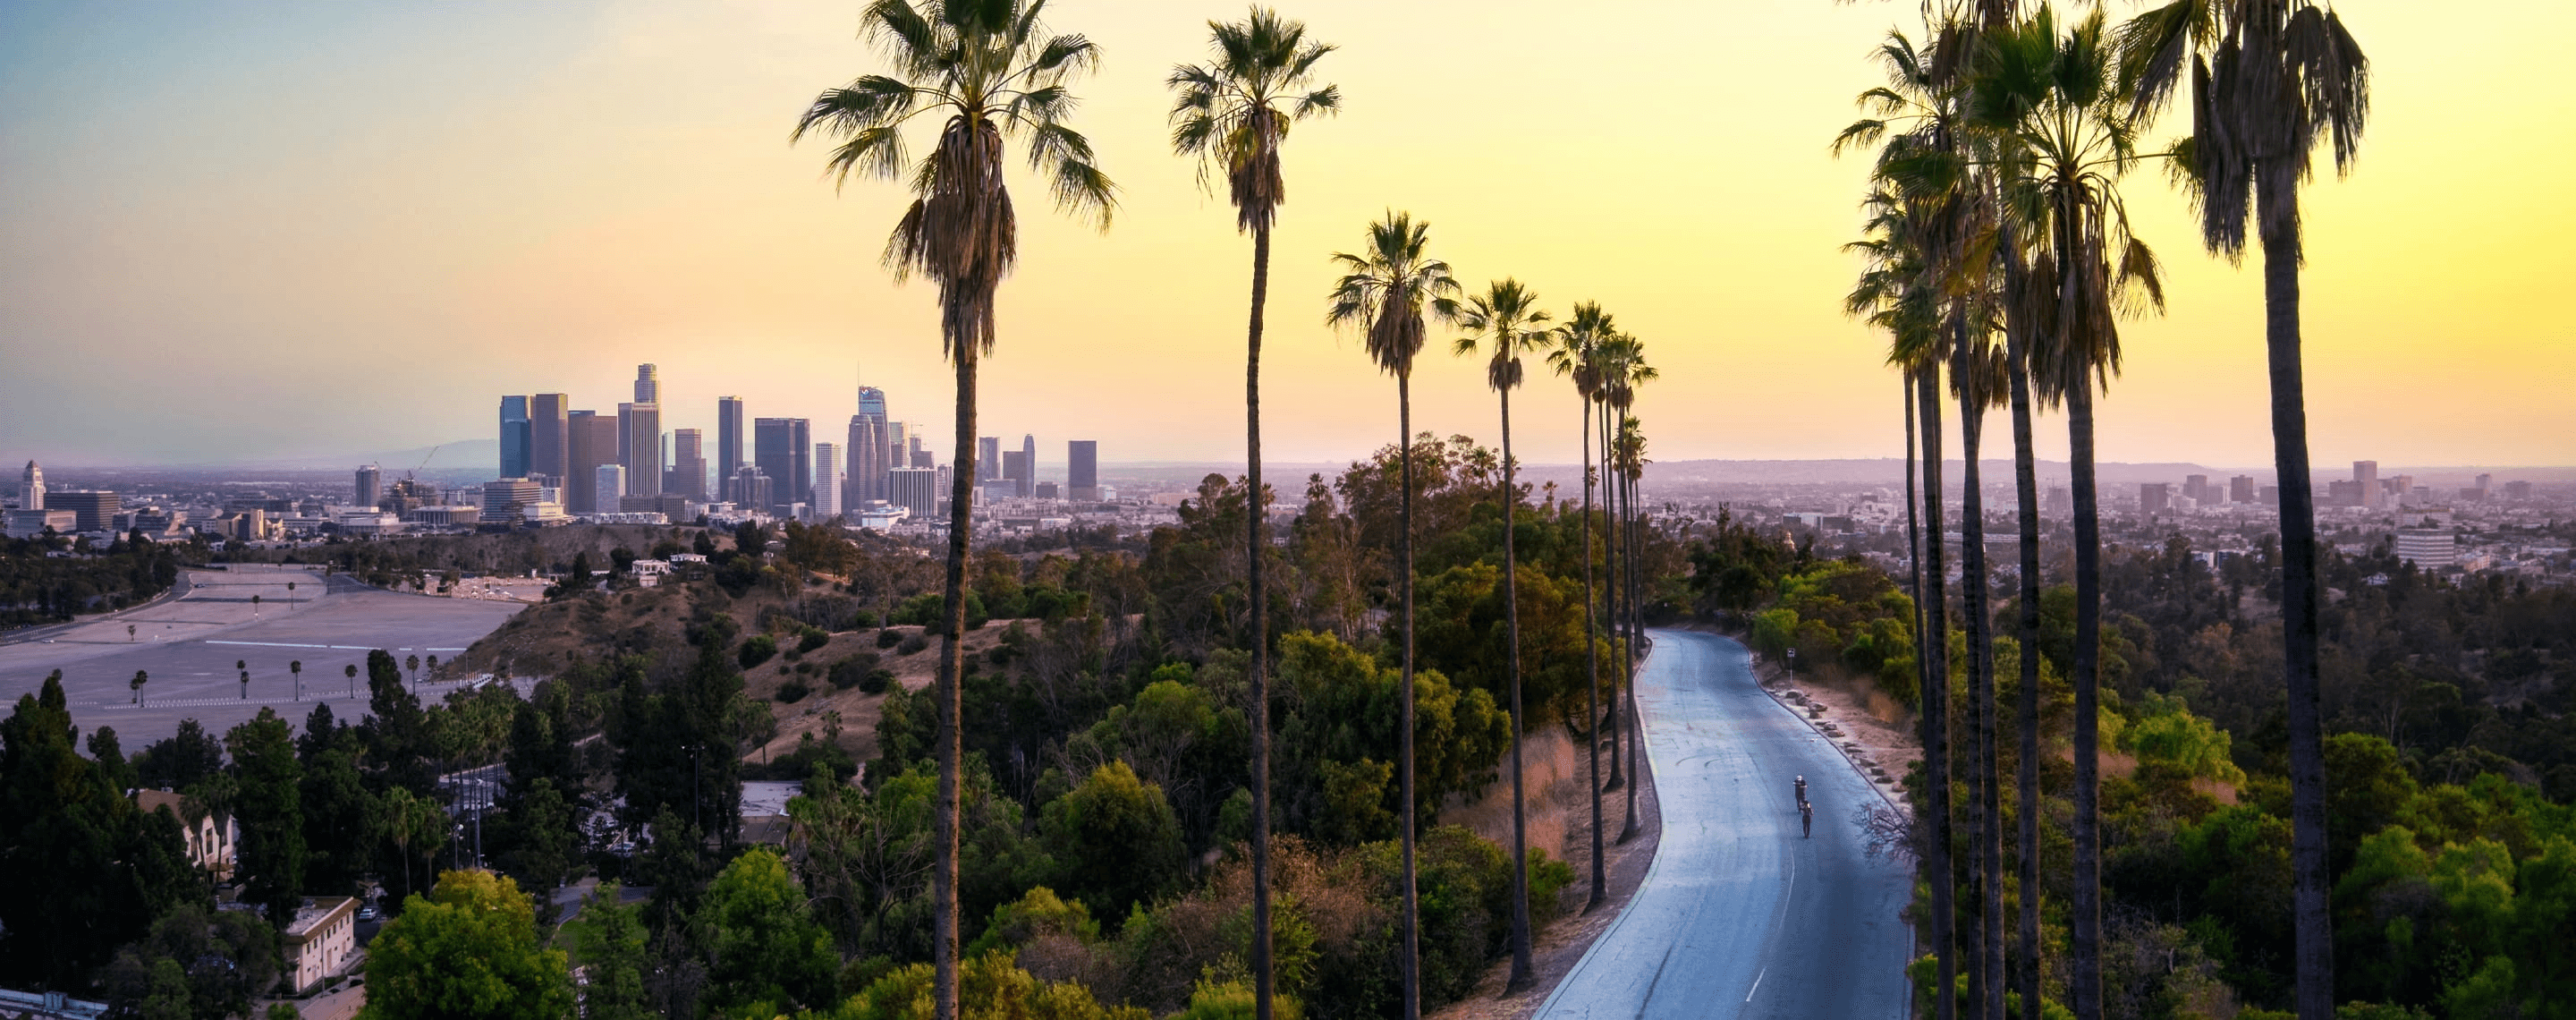 Palmengesäumte Straße in Los Angeles mit Skyline, Kalifornien